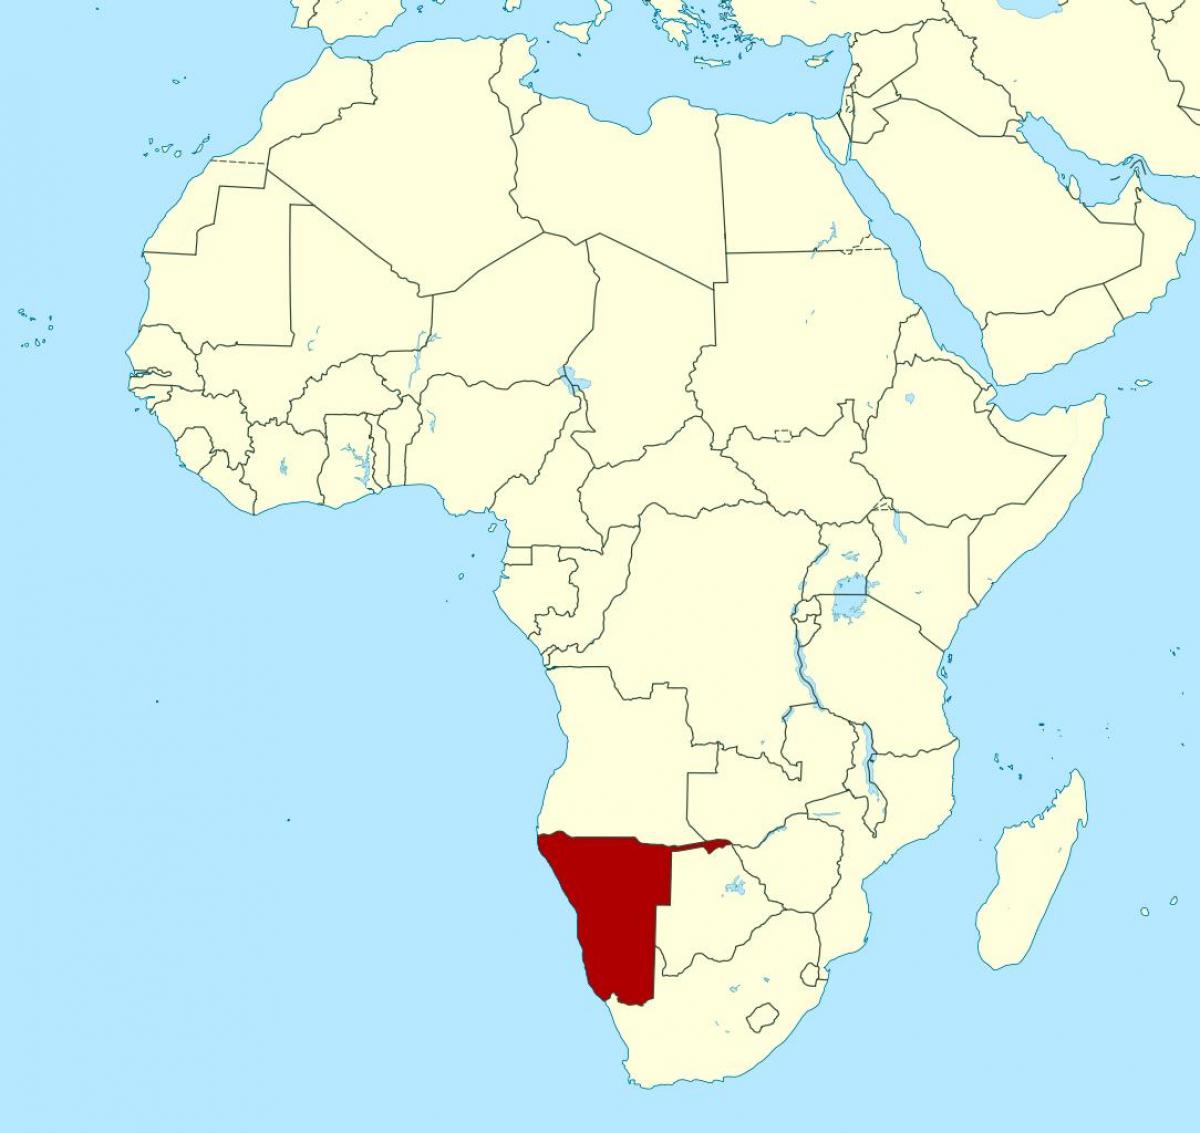 Kort over Namibia i afrika